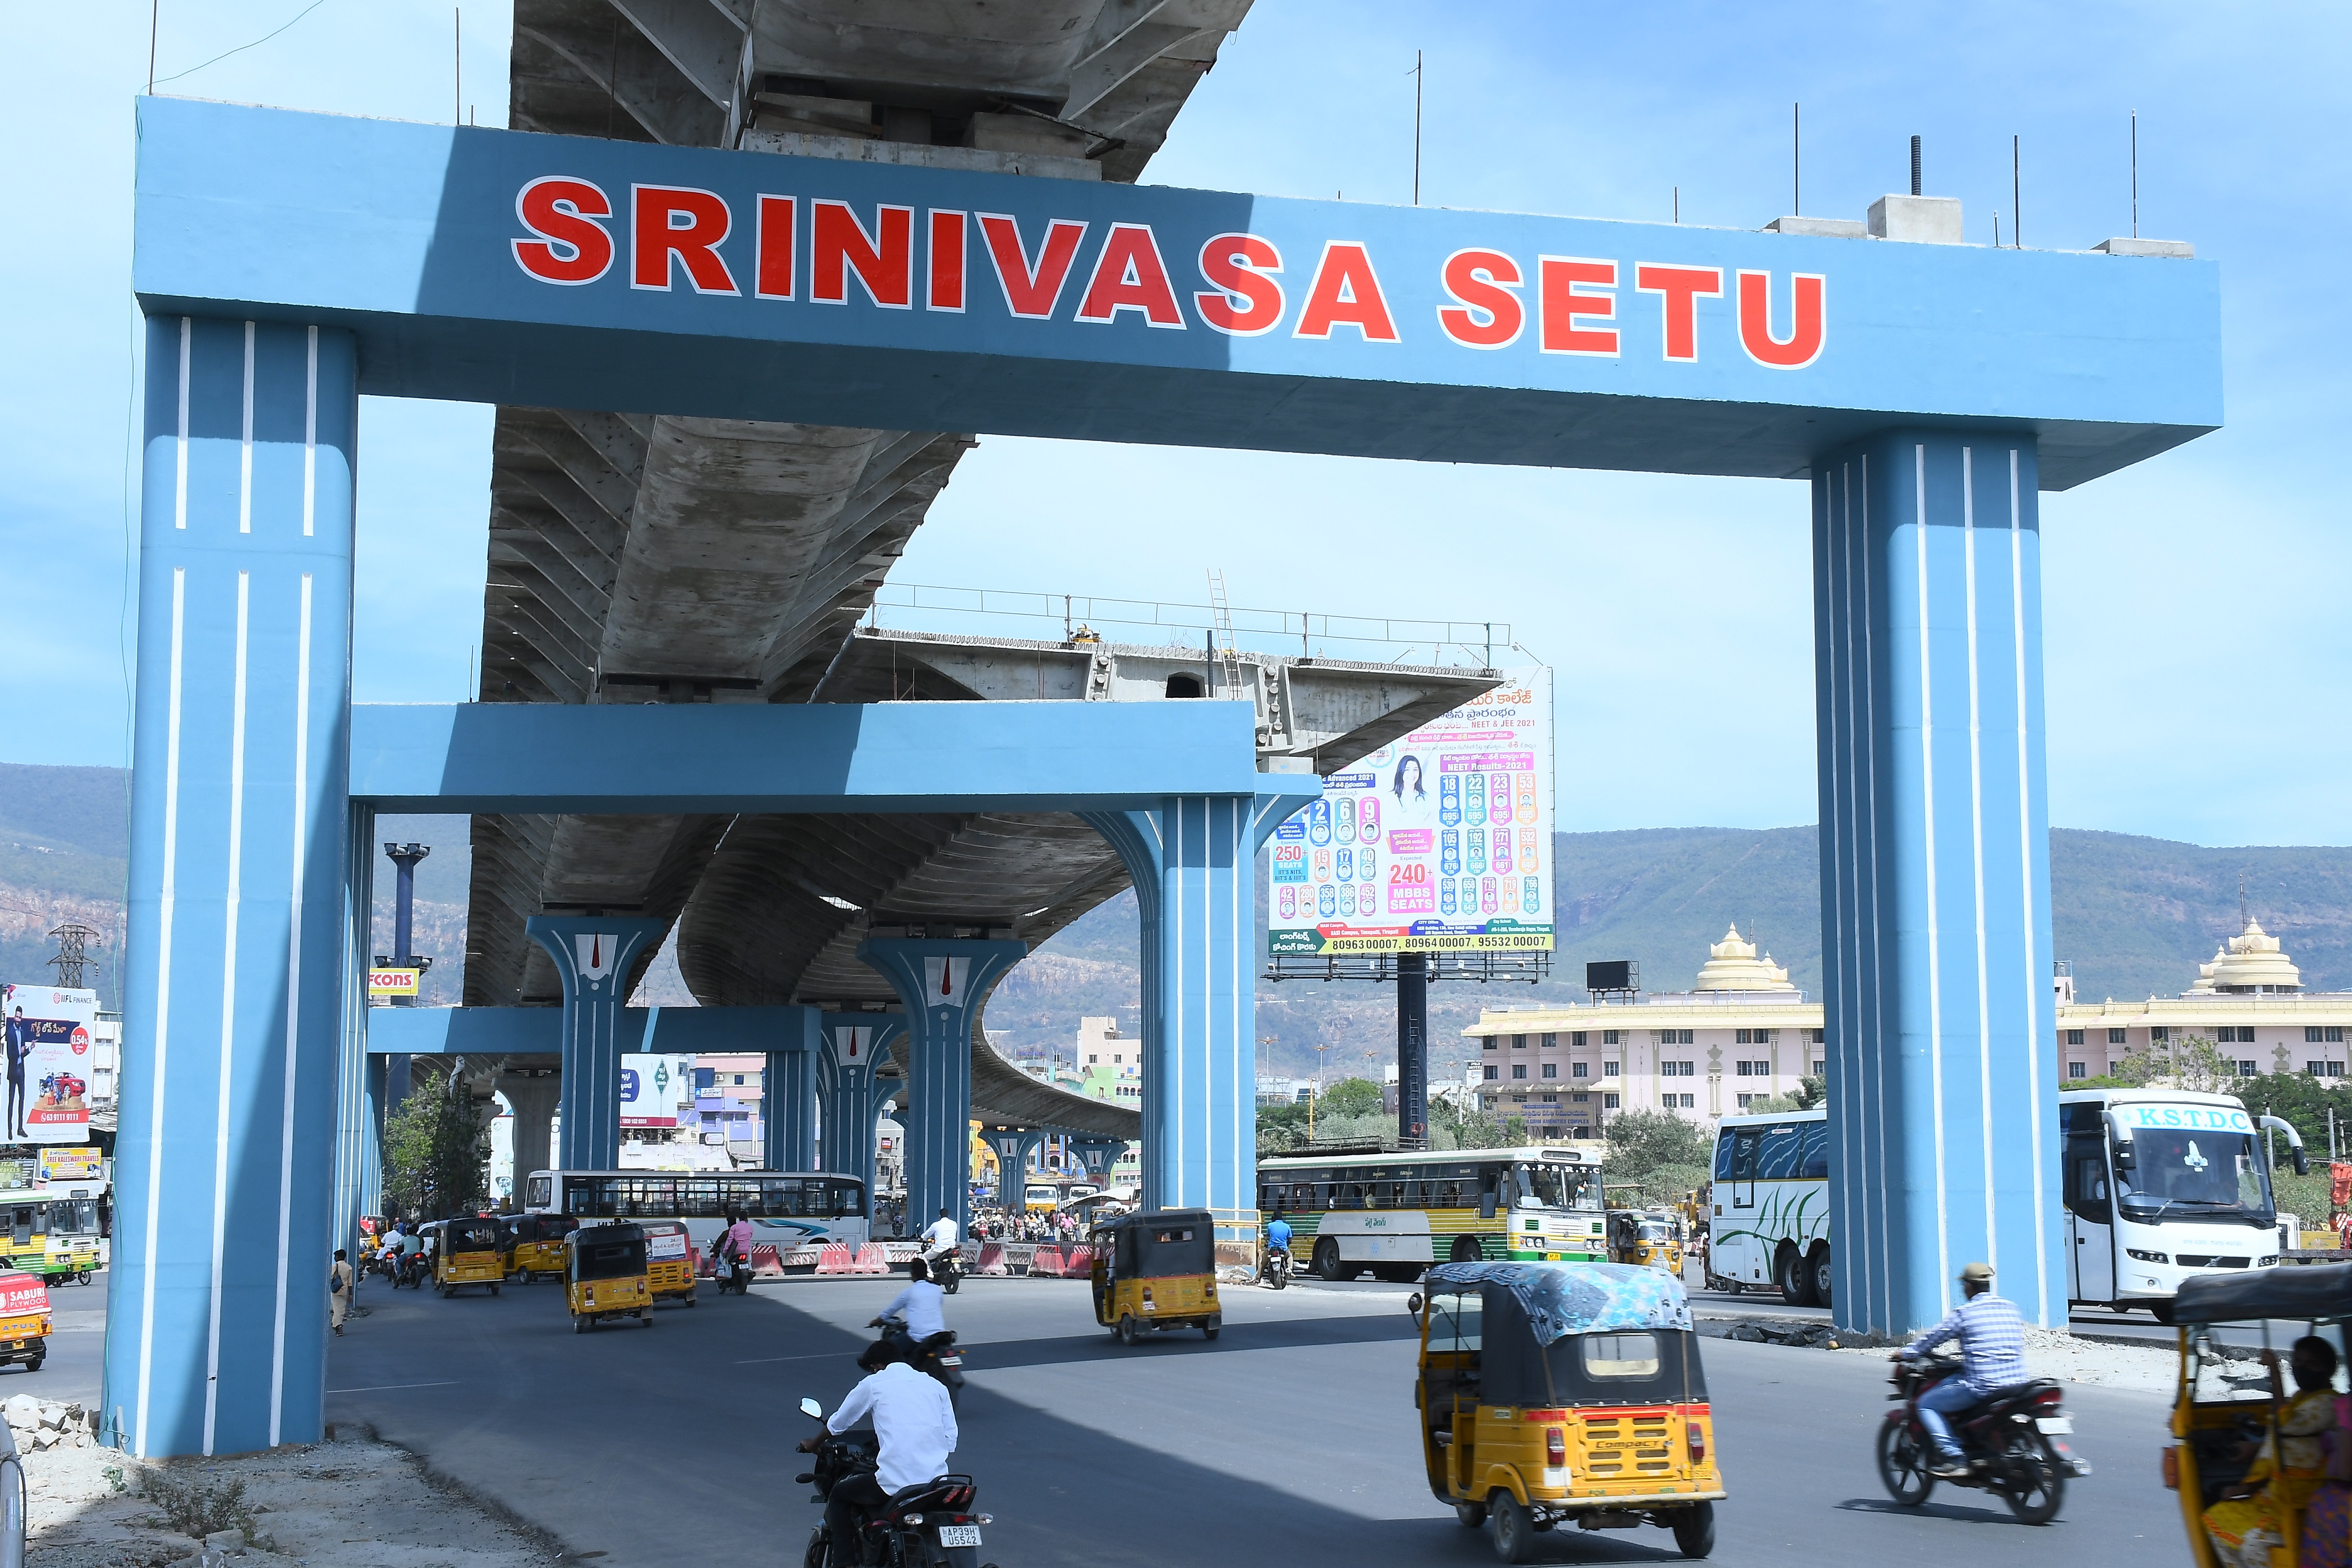 The Srinivasa Setu